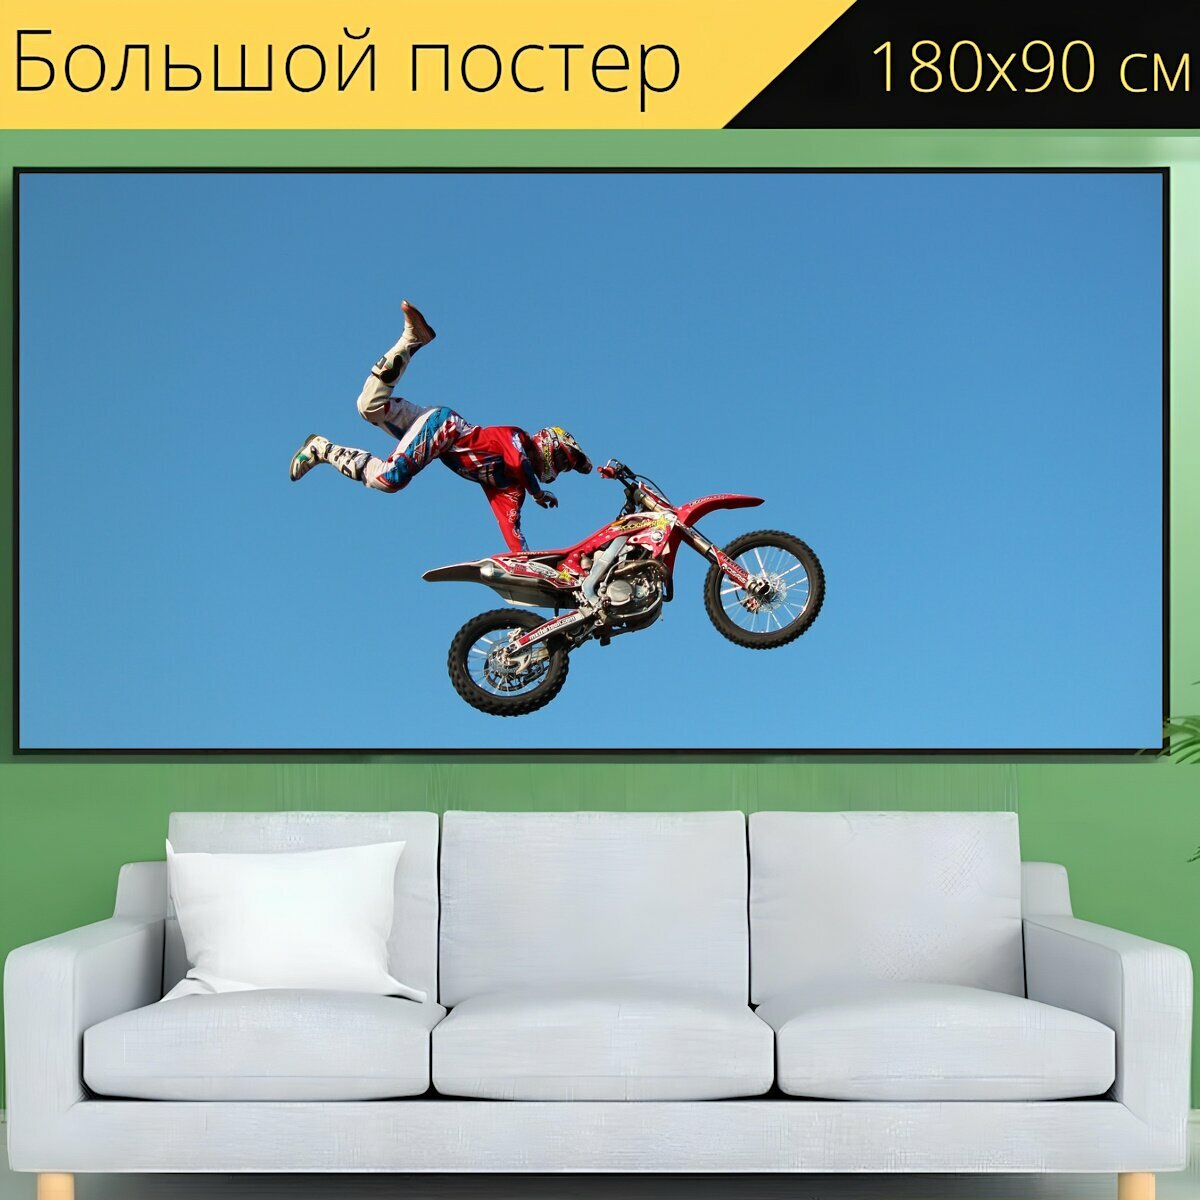 Большой постер "Мотоцикл, прыгнуть, виды спорта" 180 x 90 см. для интерьера